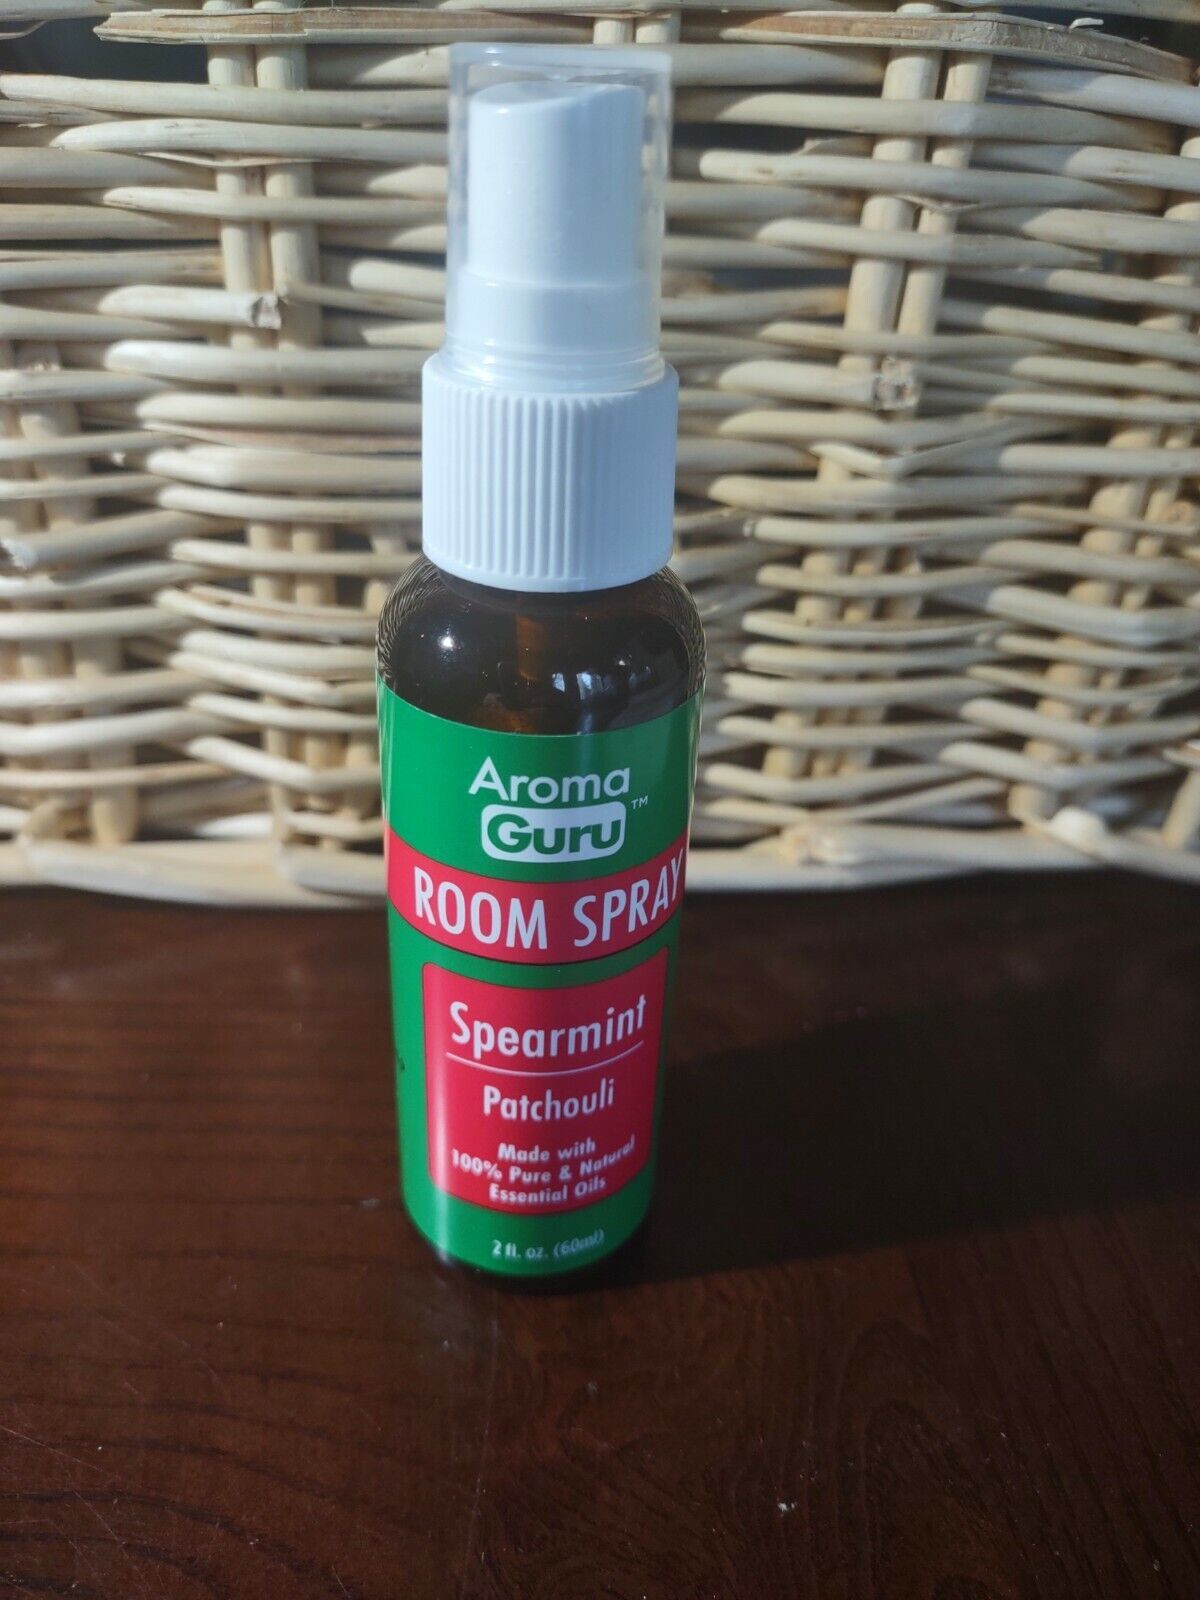 Aroma Guru Room Spray Spearmint Patchouli